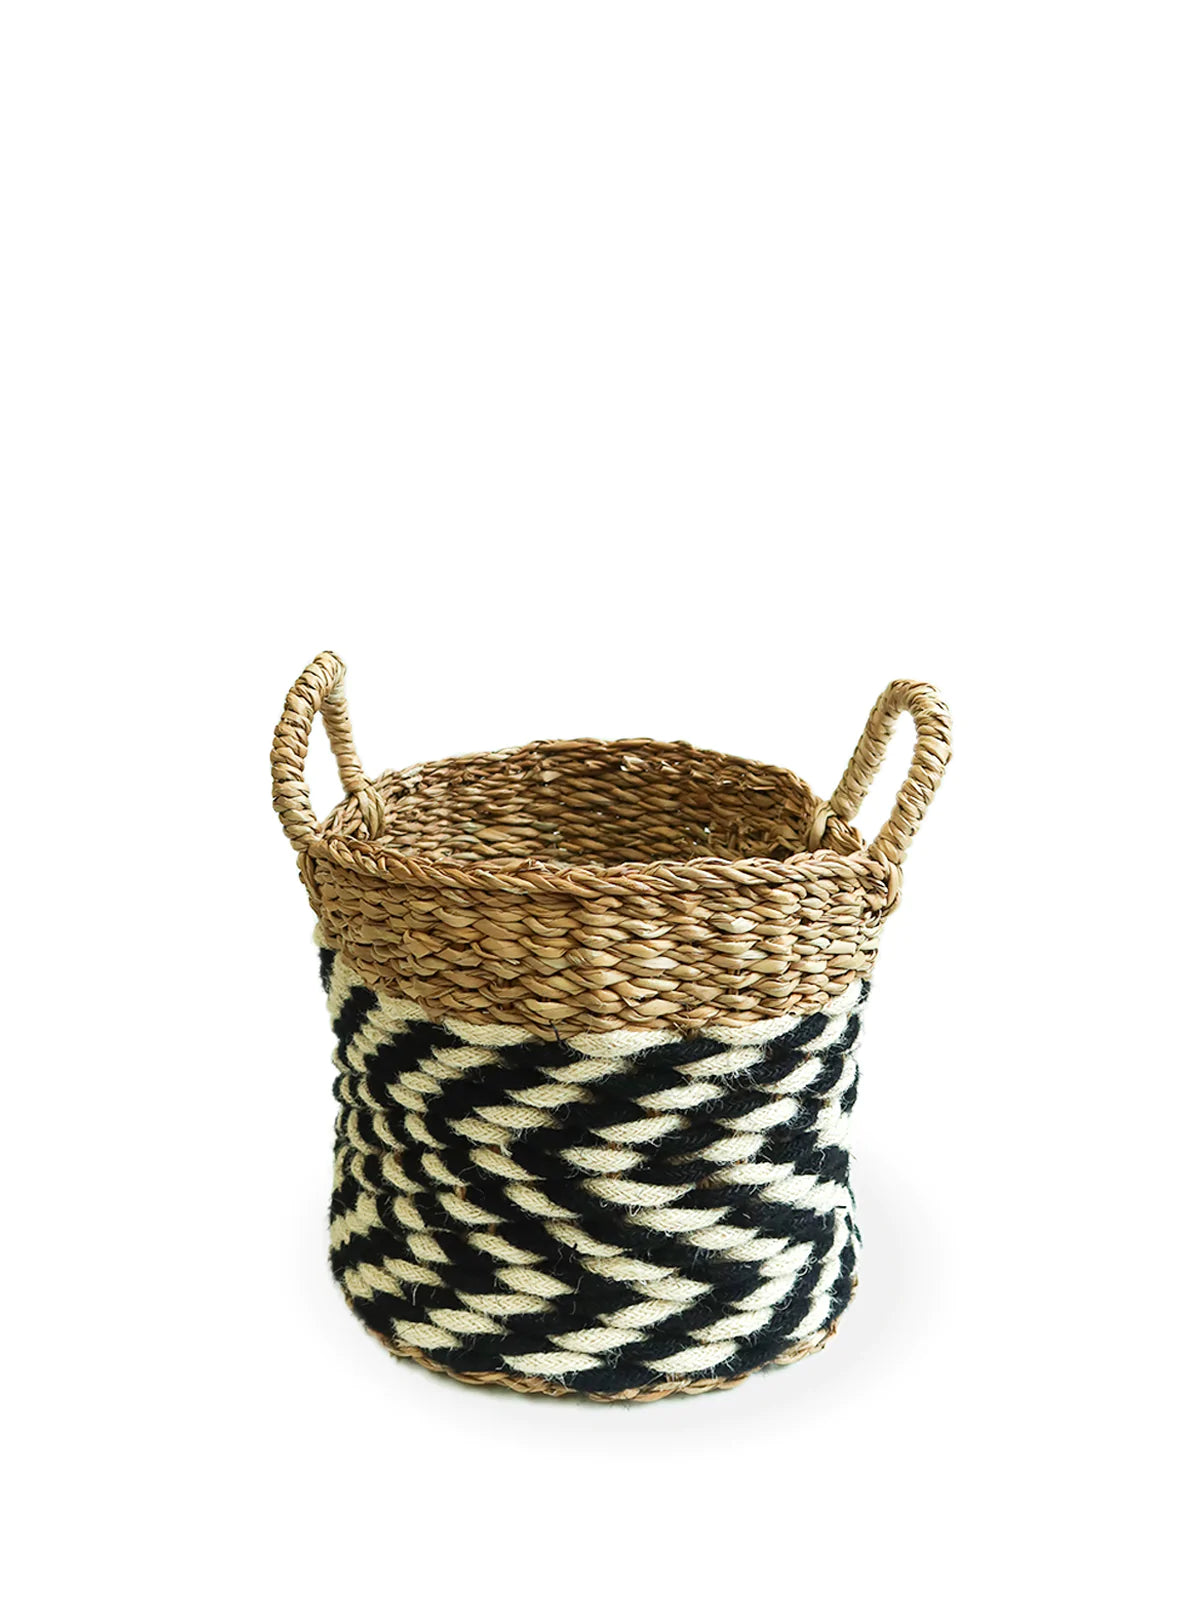 Ula Zigzag Basket - BagLunchproduct,corp